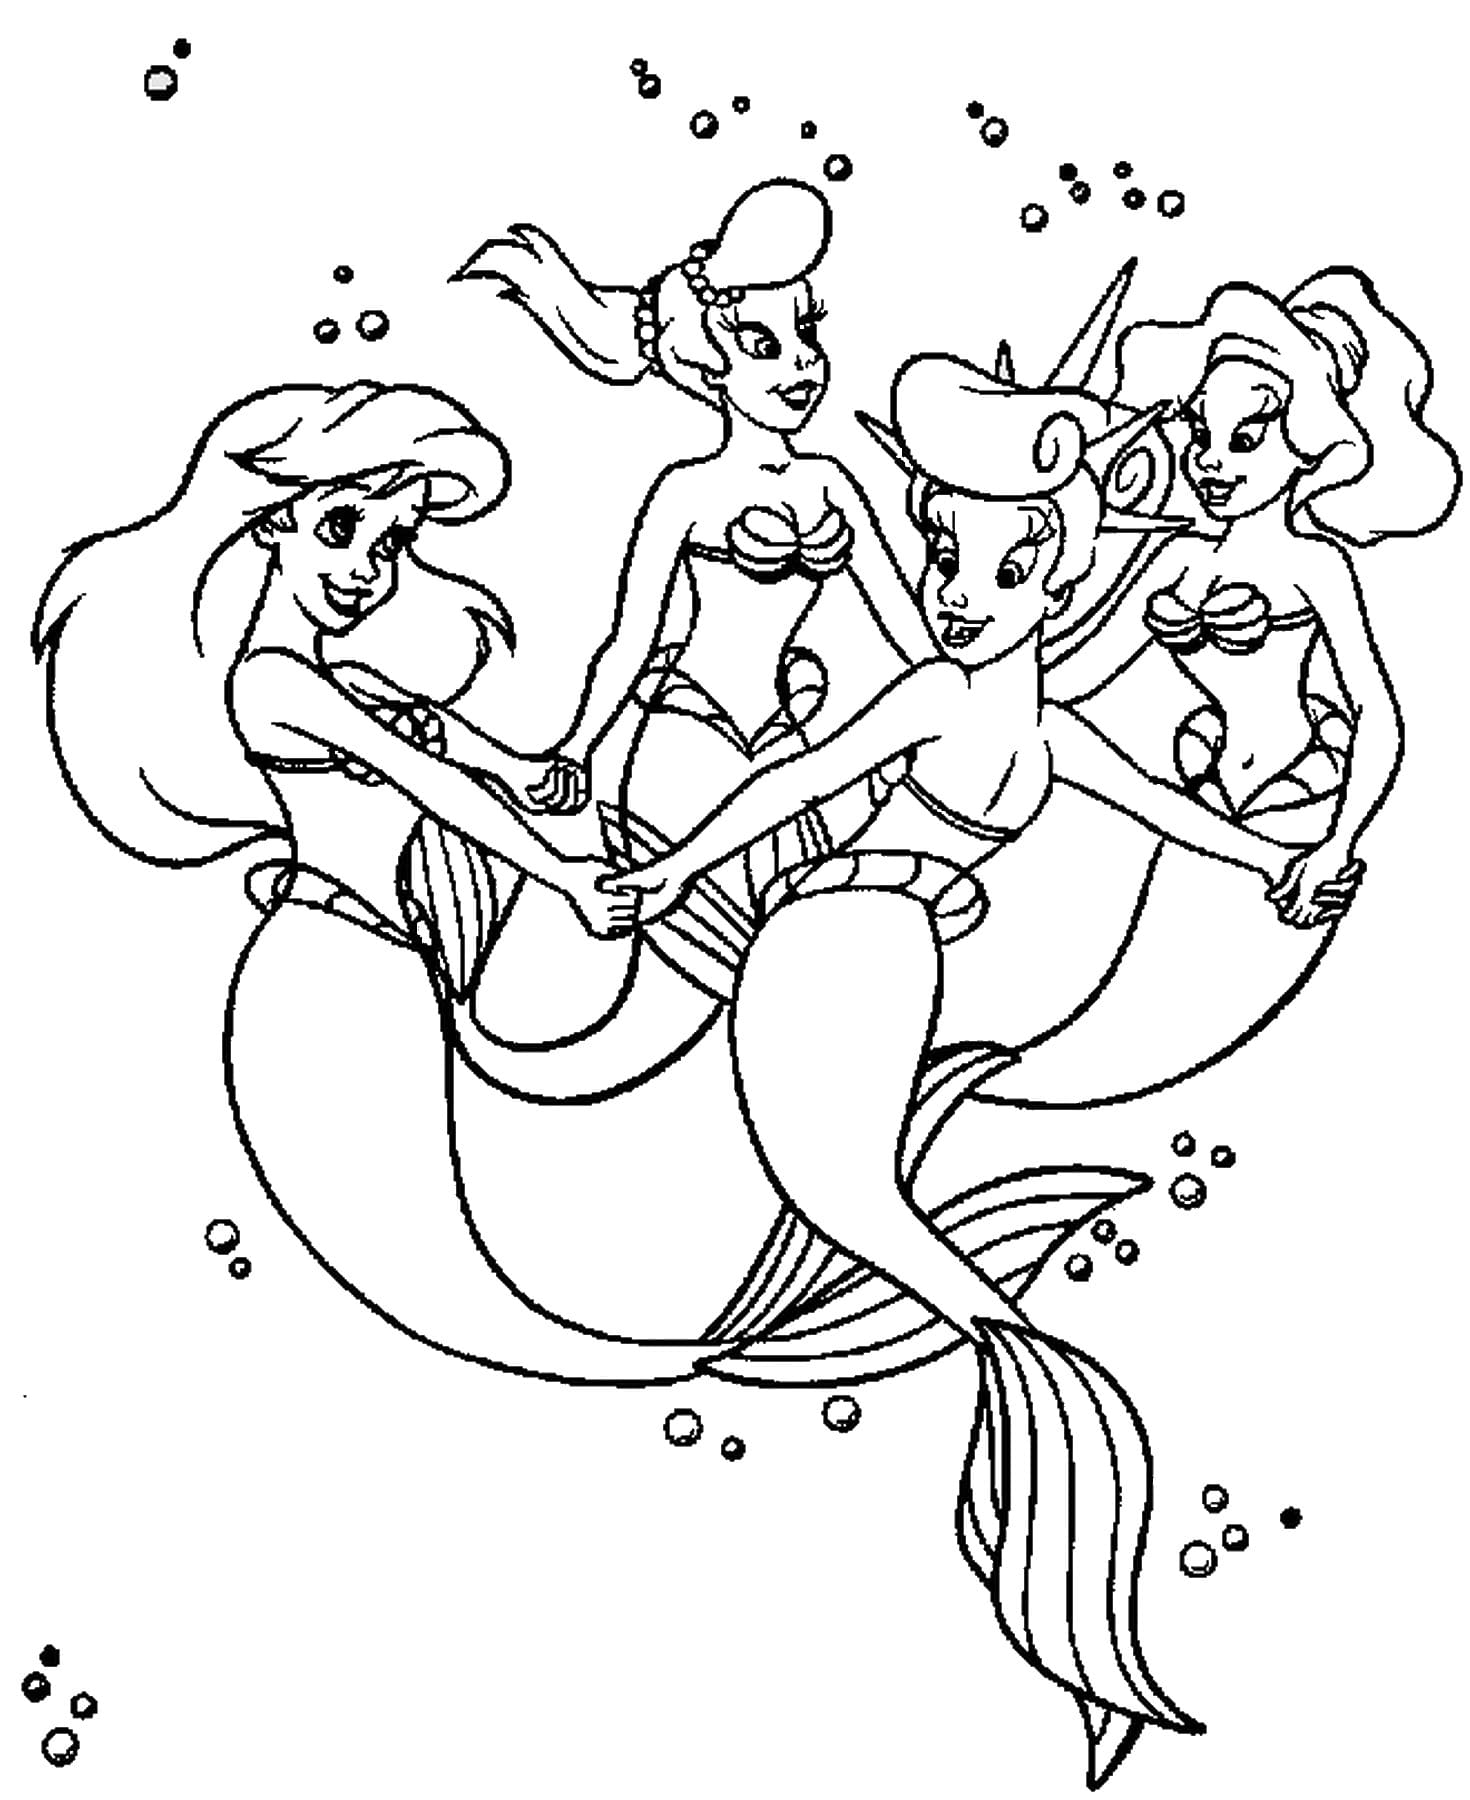 Disegno di Ariel 37 di La sirenetta da stampare e colorare